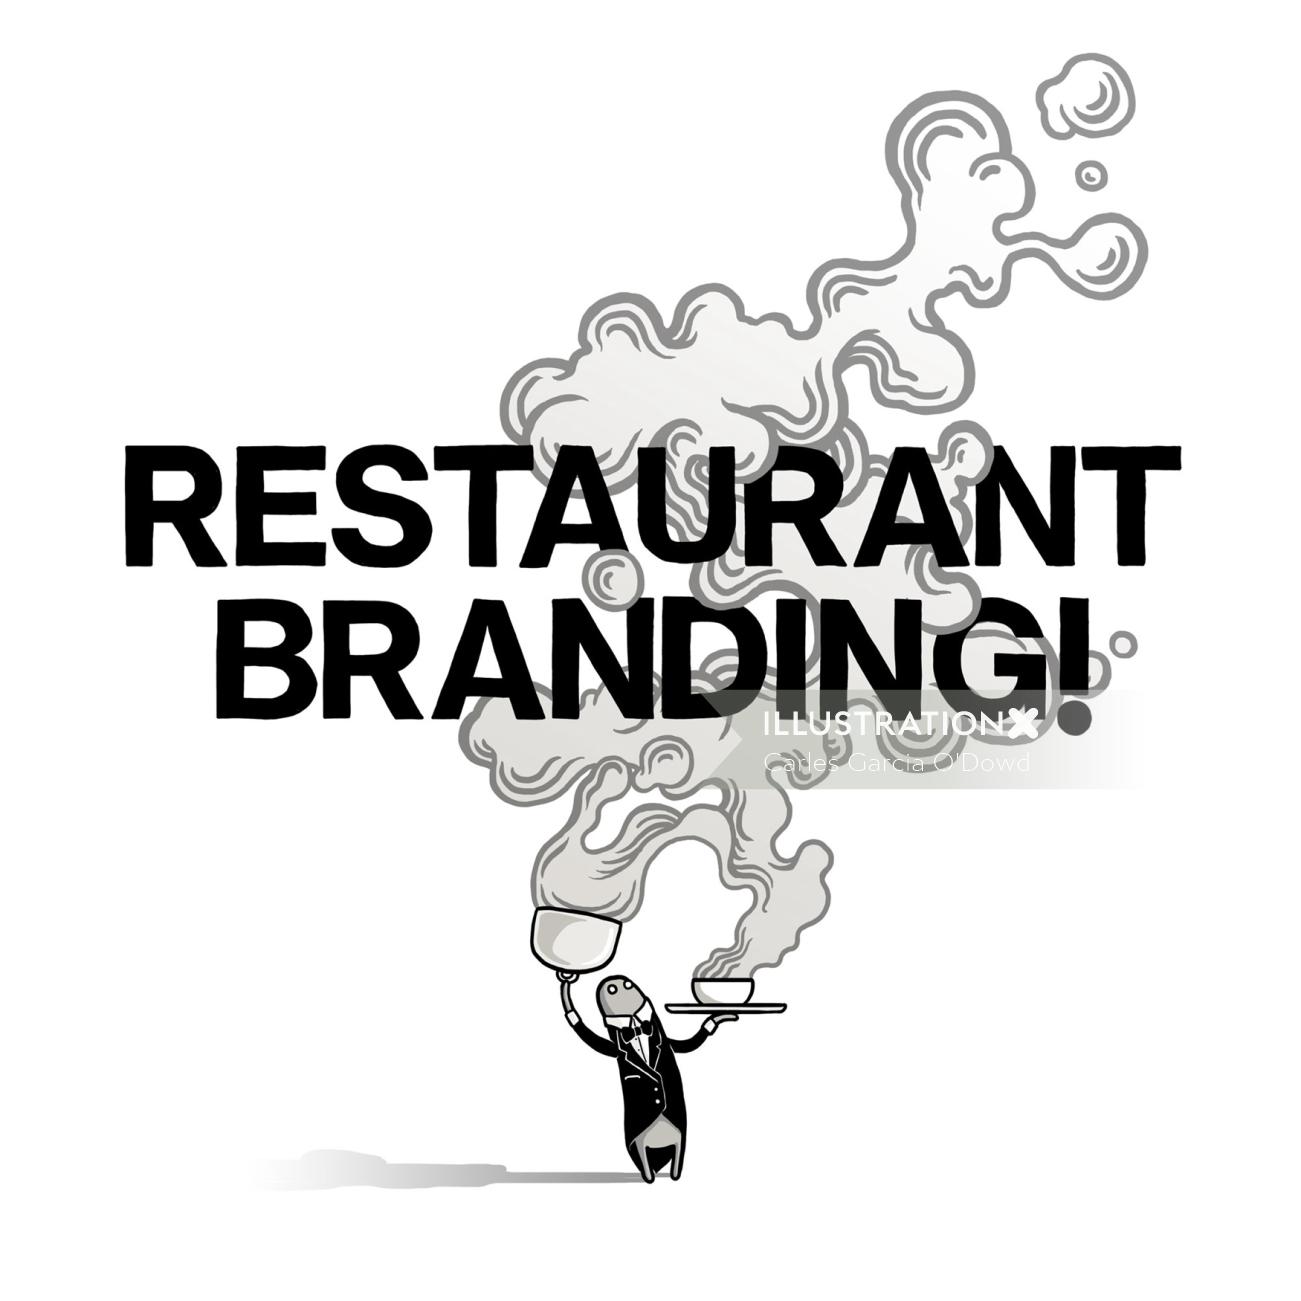 ソーシャル メディア キャンペーン用のレストラン ブランディング アートワーク